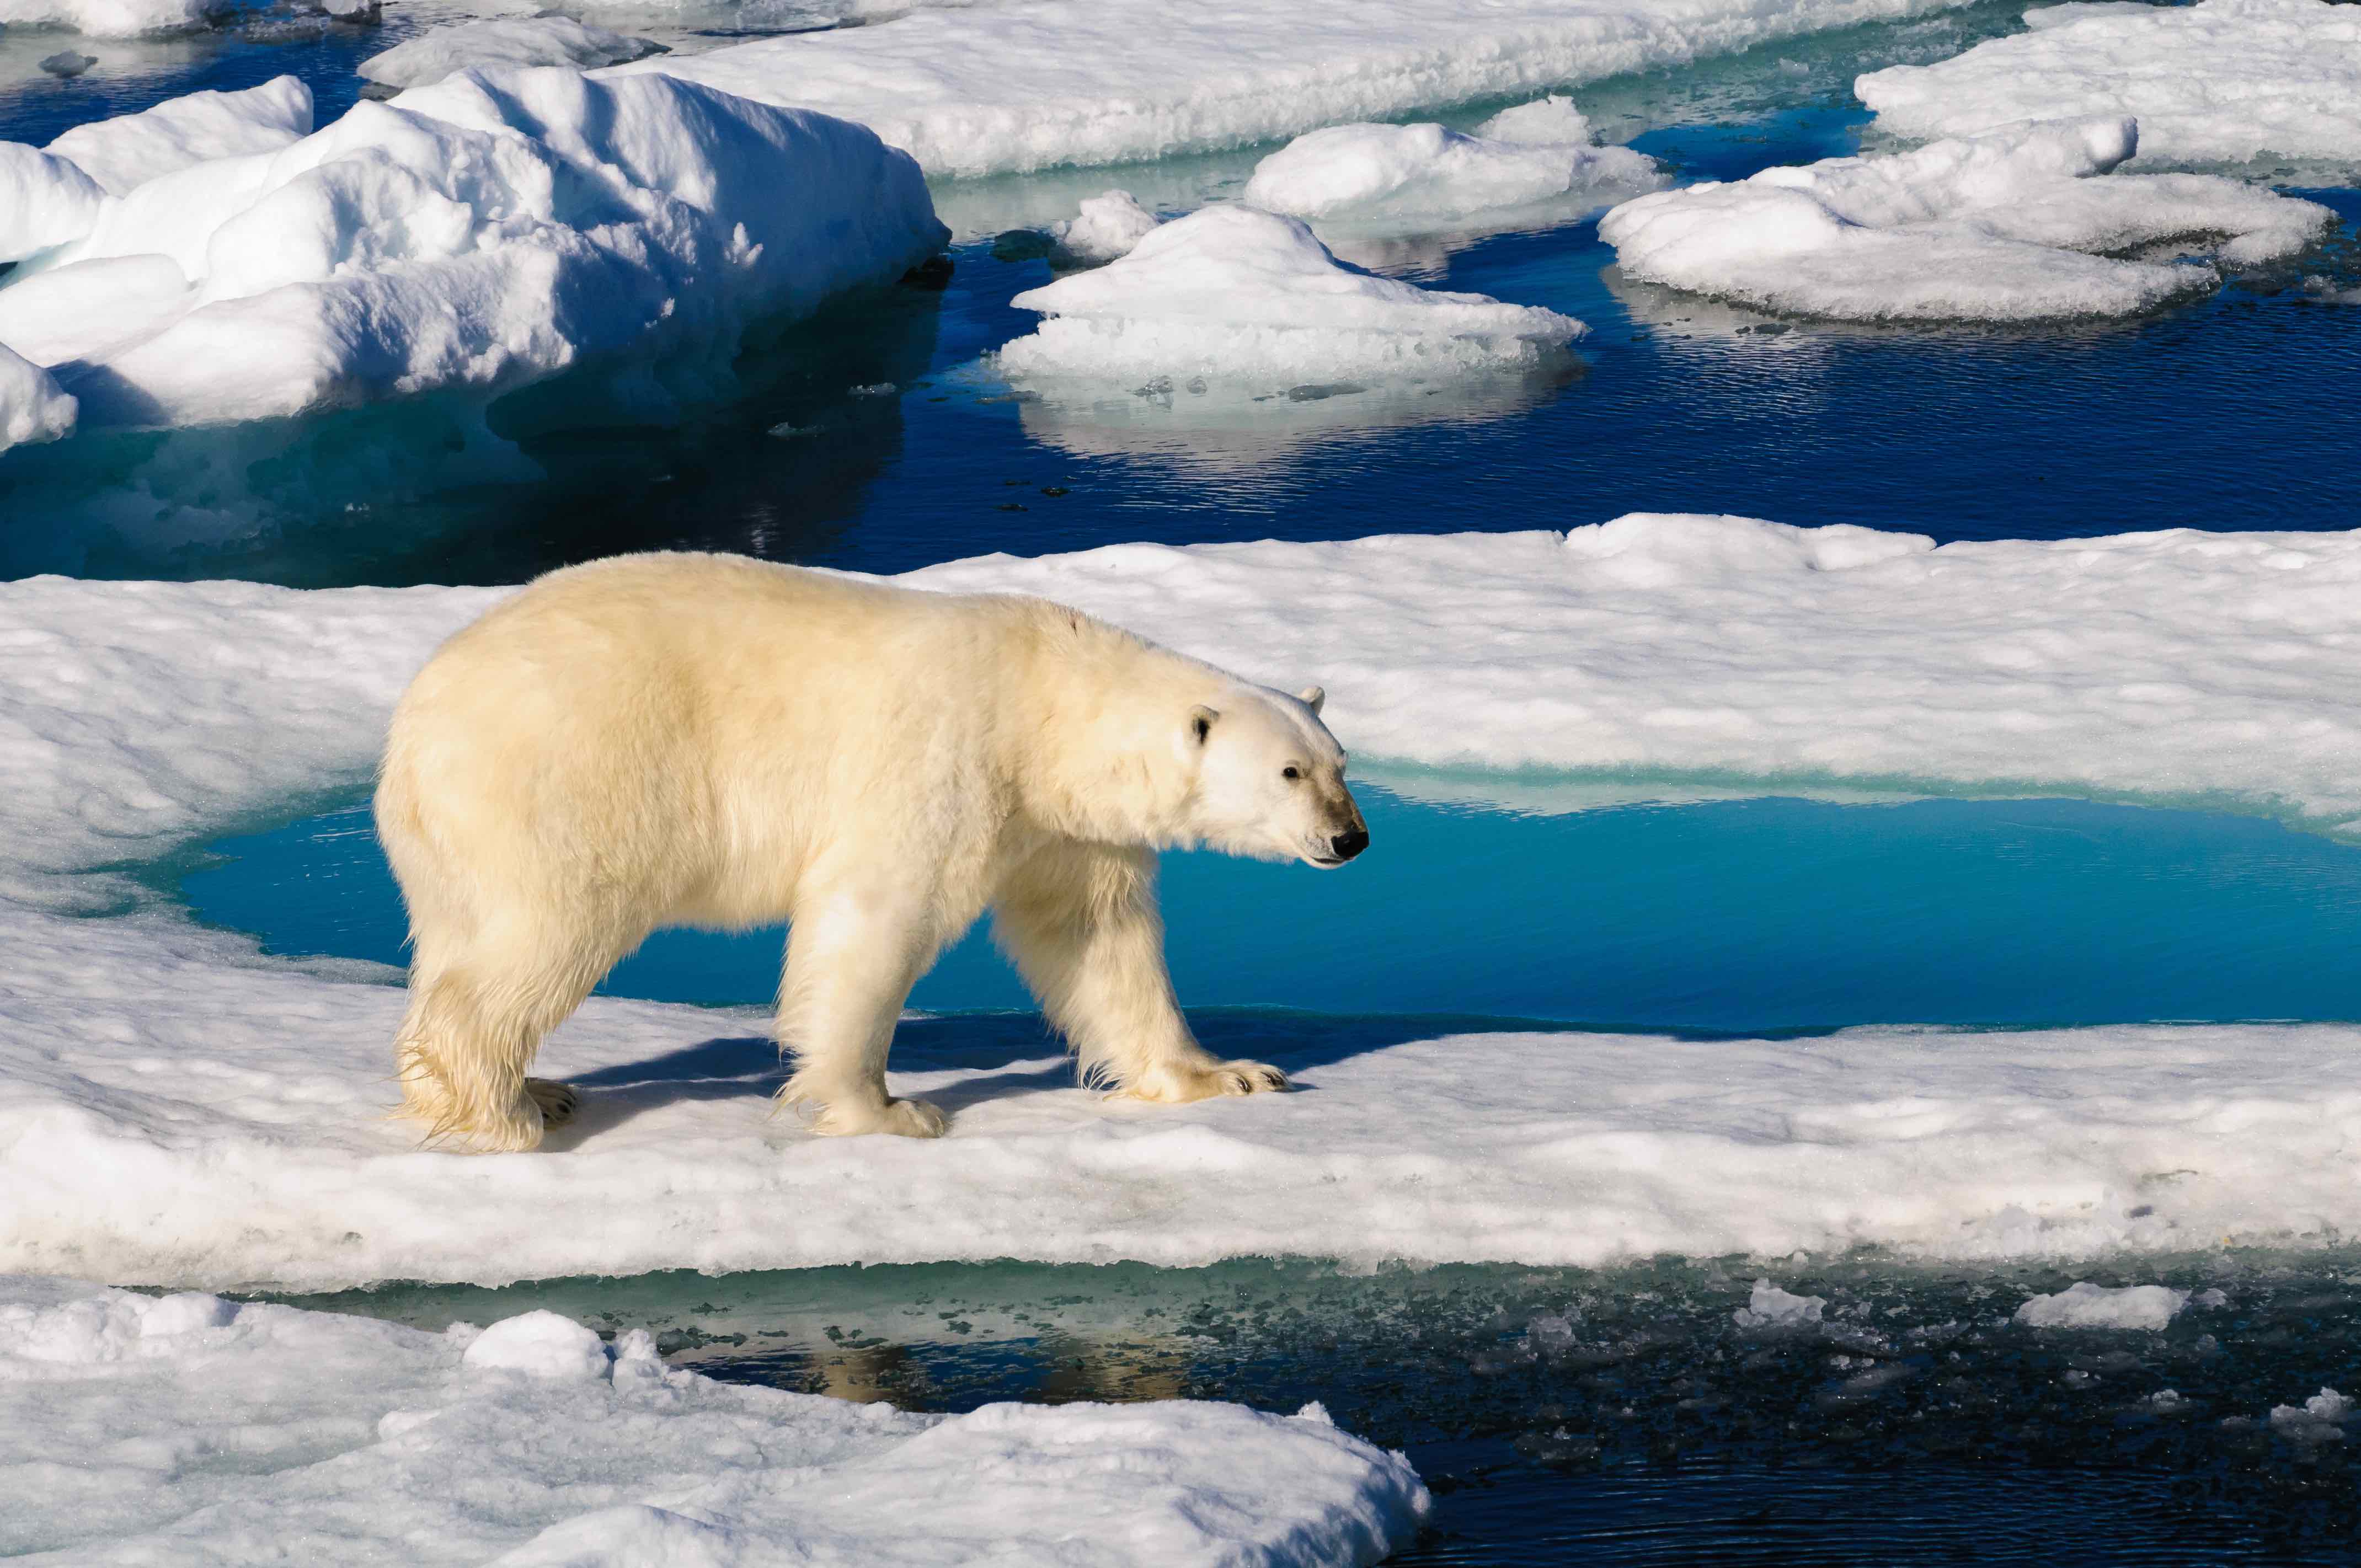 A single polar bear on all fours walking on the Arctic Ocean’s ice